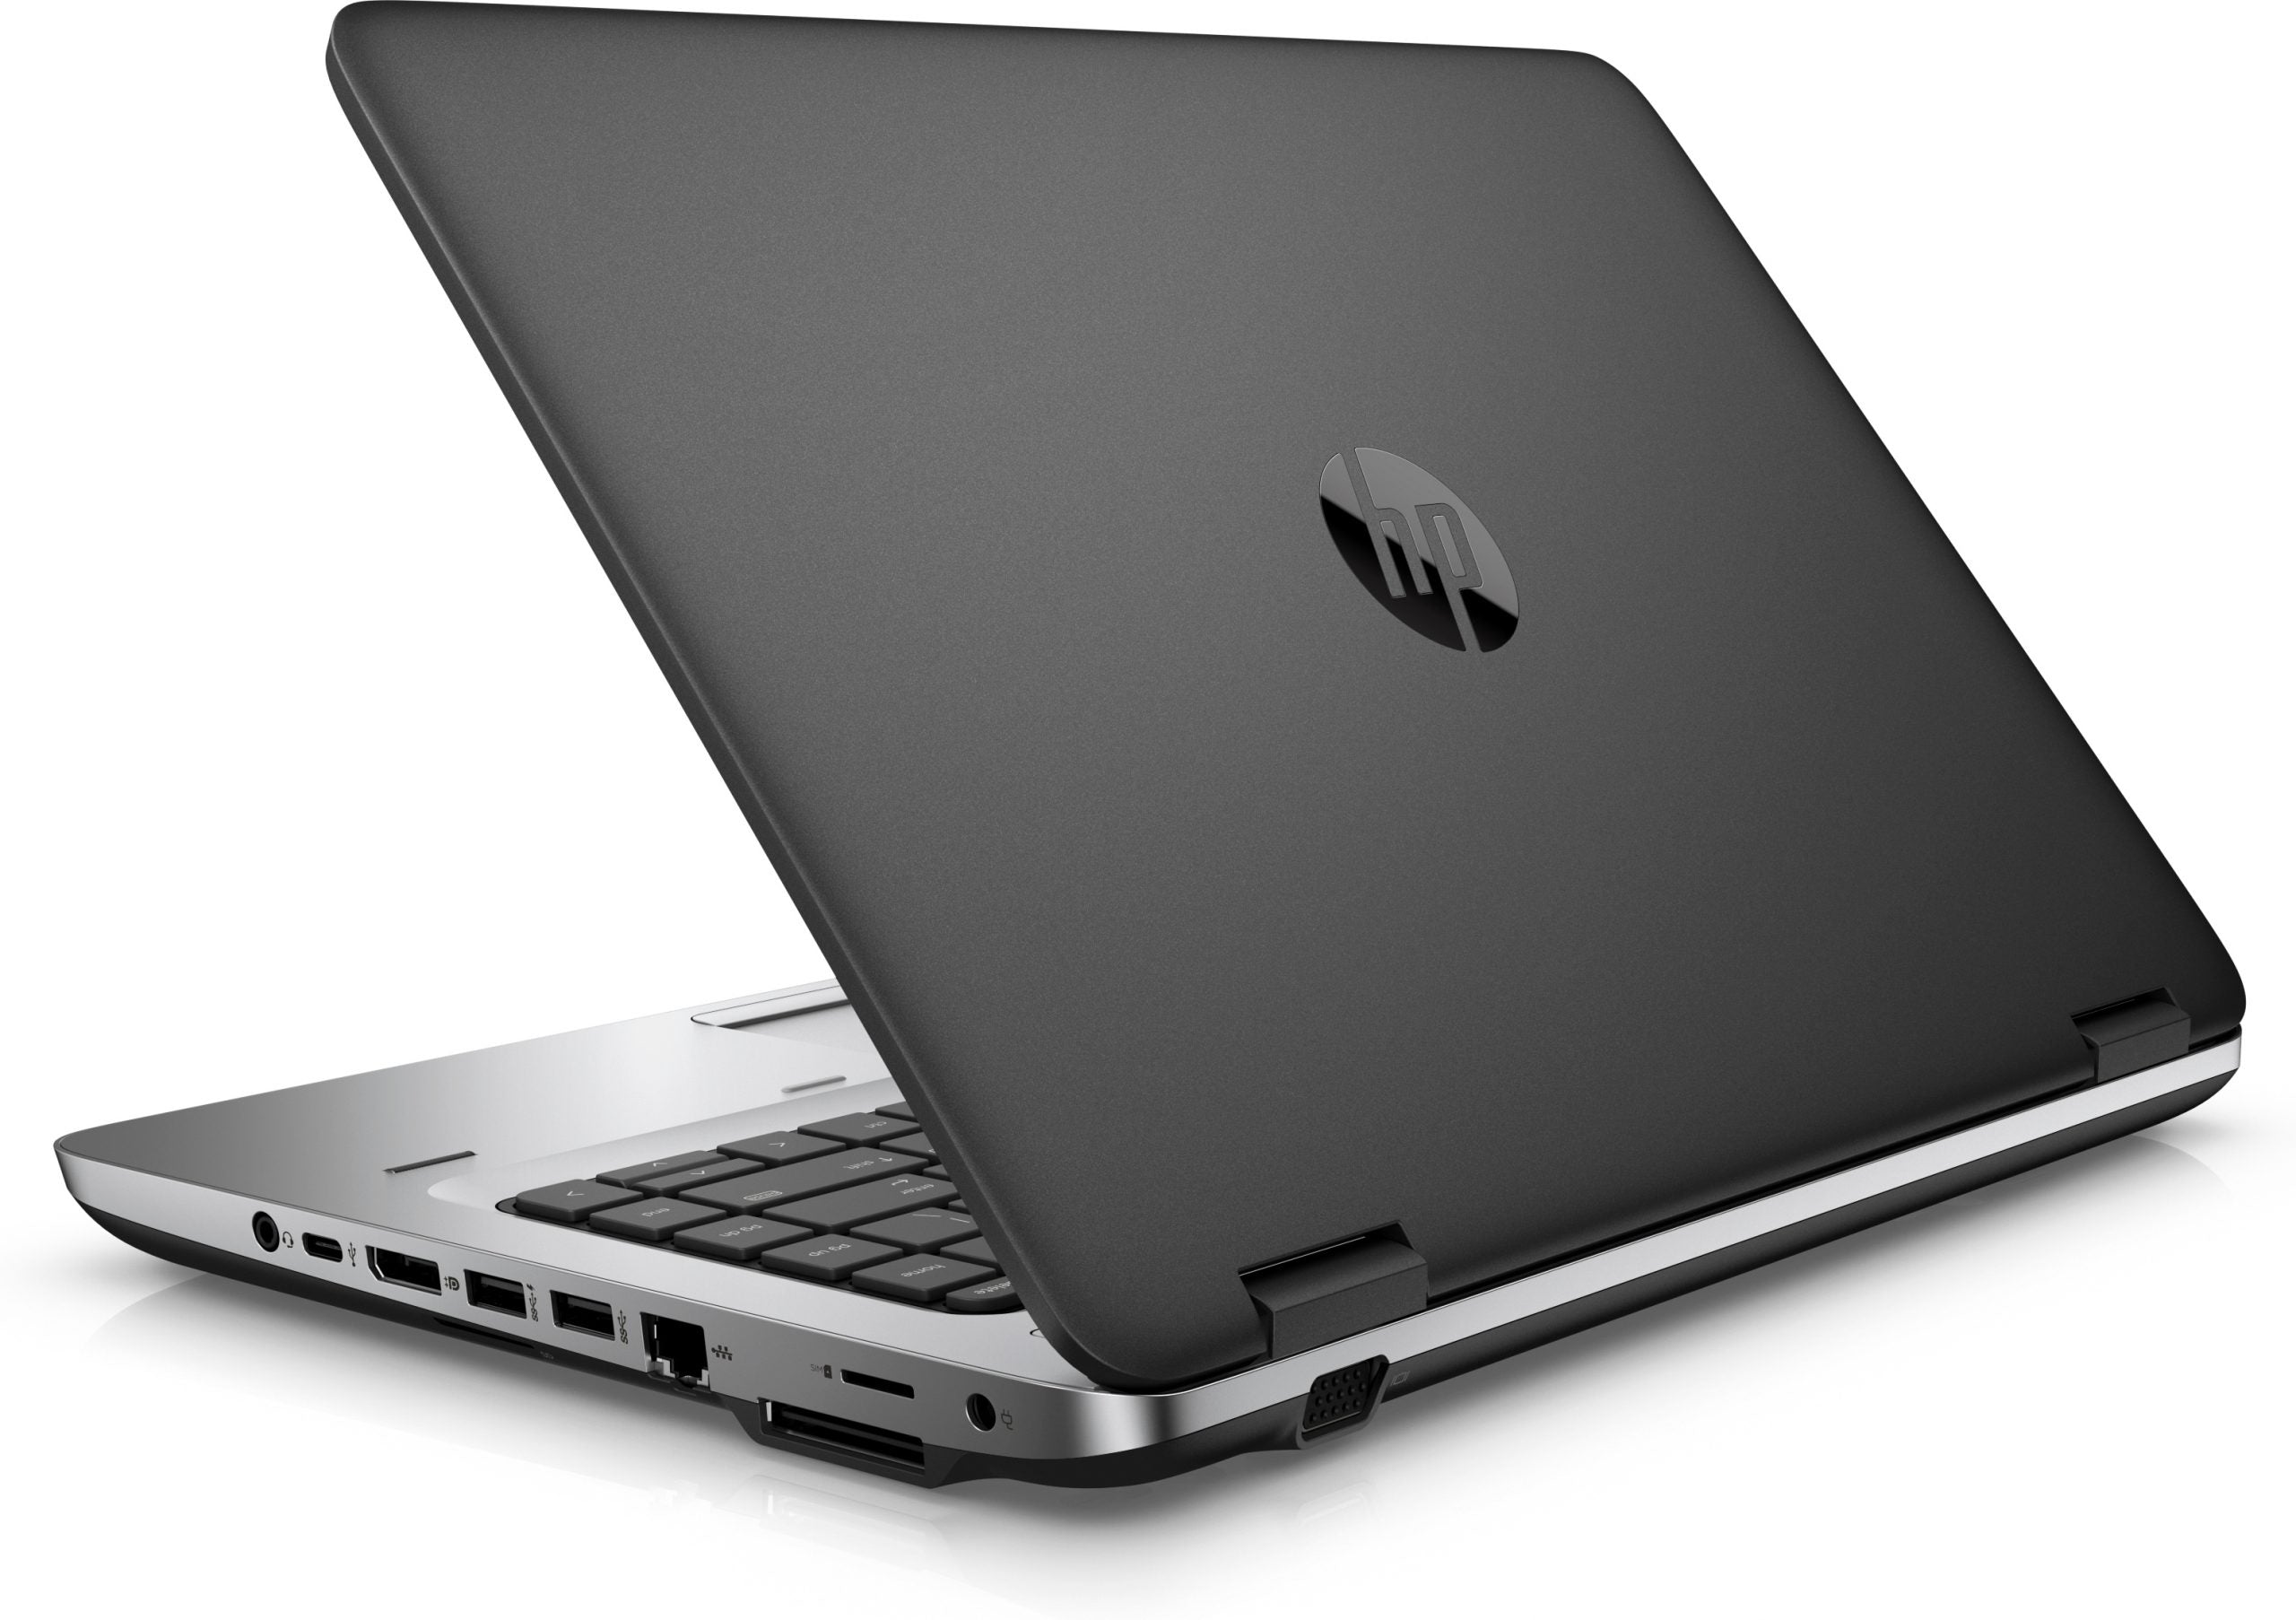 HP ProBook 645 G3 14″ HD-Notebook | AMD A6-8530B 2,3 GHz | SSD 256 GB | RAM 8 GB | Webcam-Tastatur ITA | HP D9Y32AA Dockingstation und kostenlose PC-Tasche | Windows 10 Pro